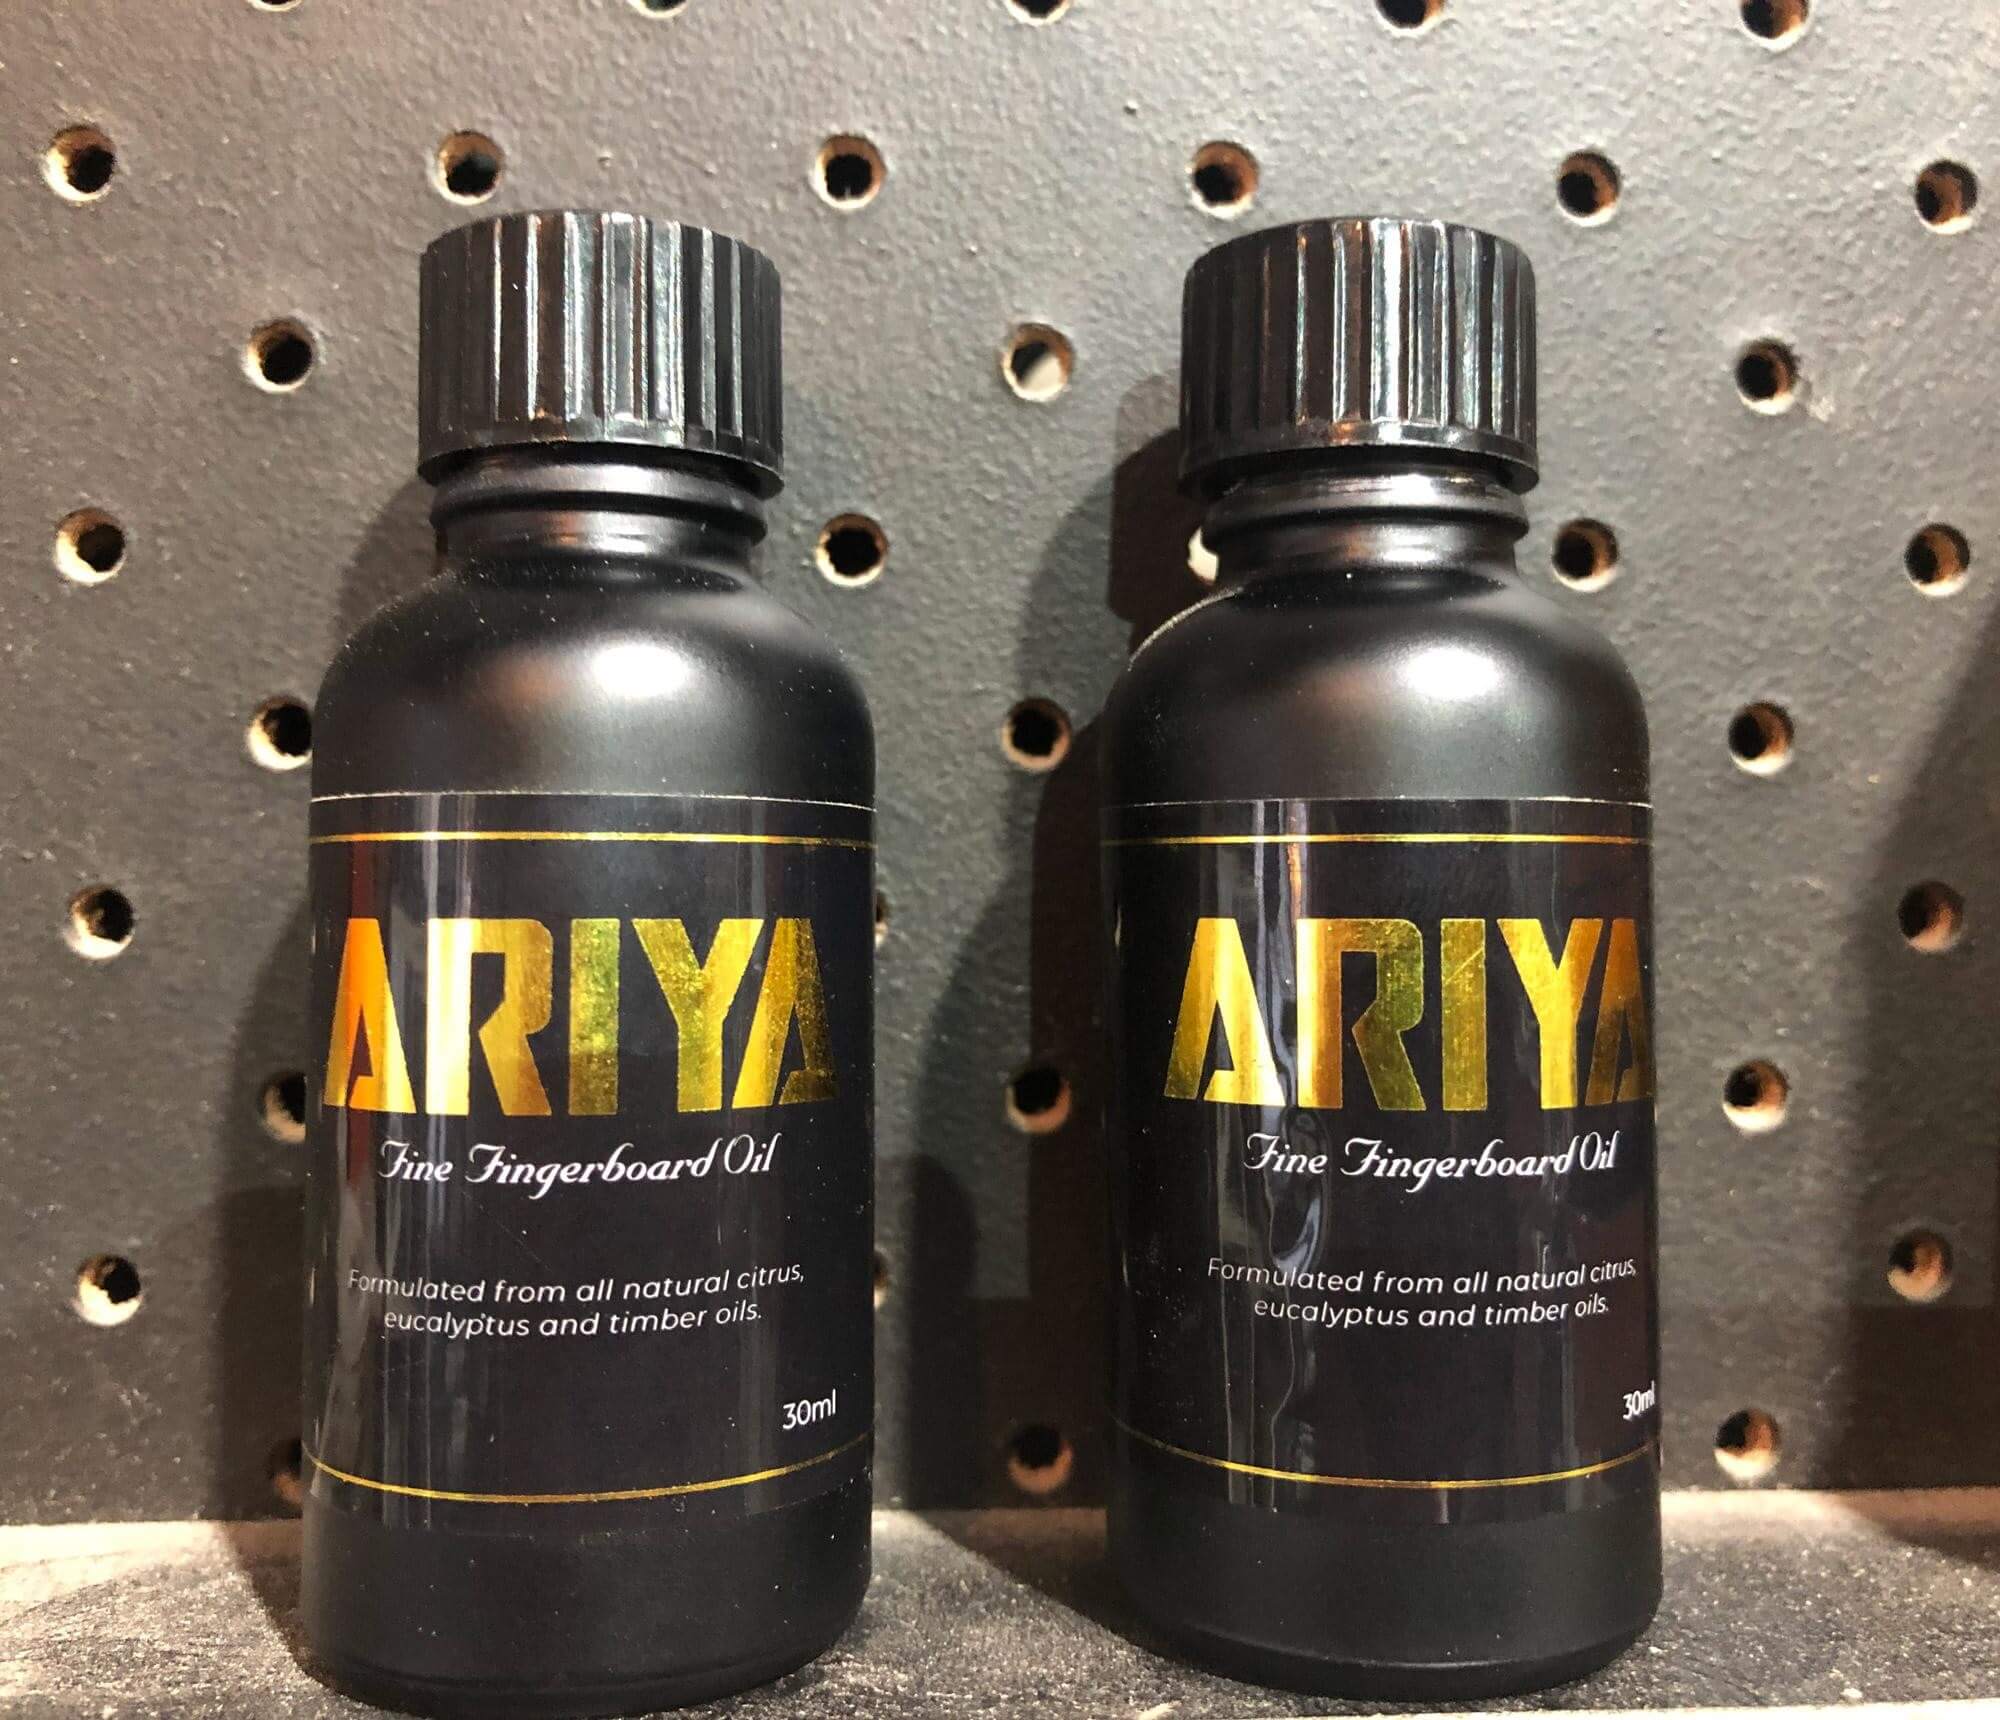 ARIYA Fine Fingerboard Oil Product Labels